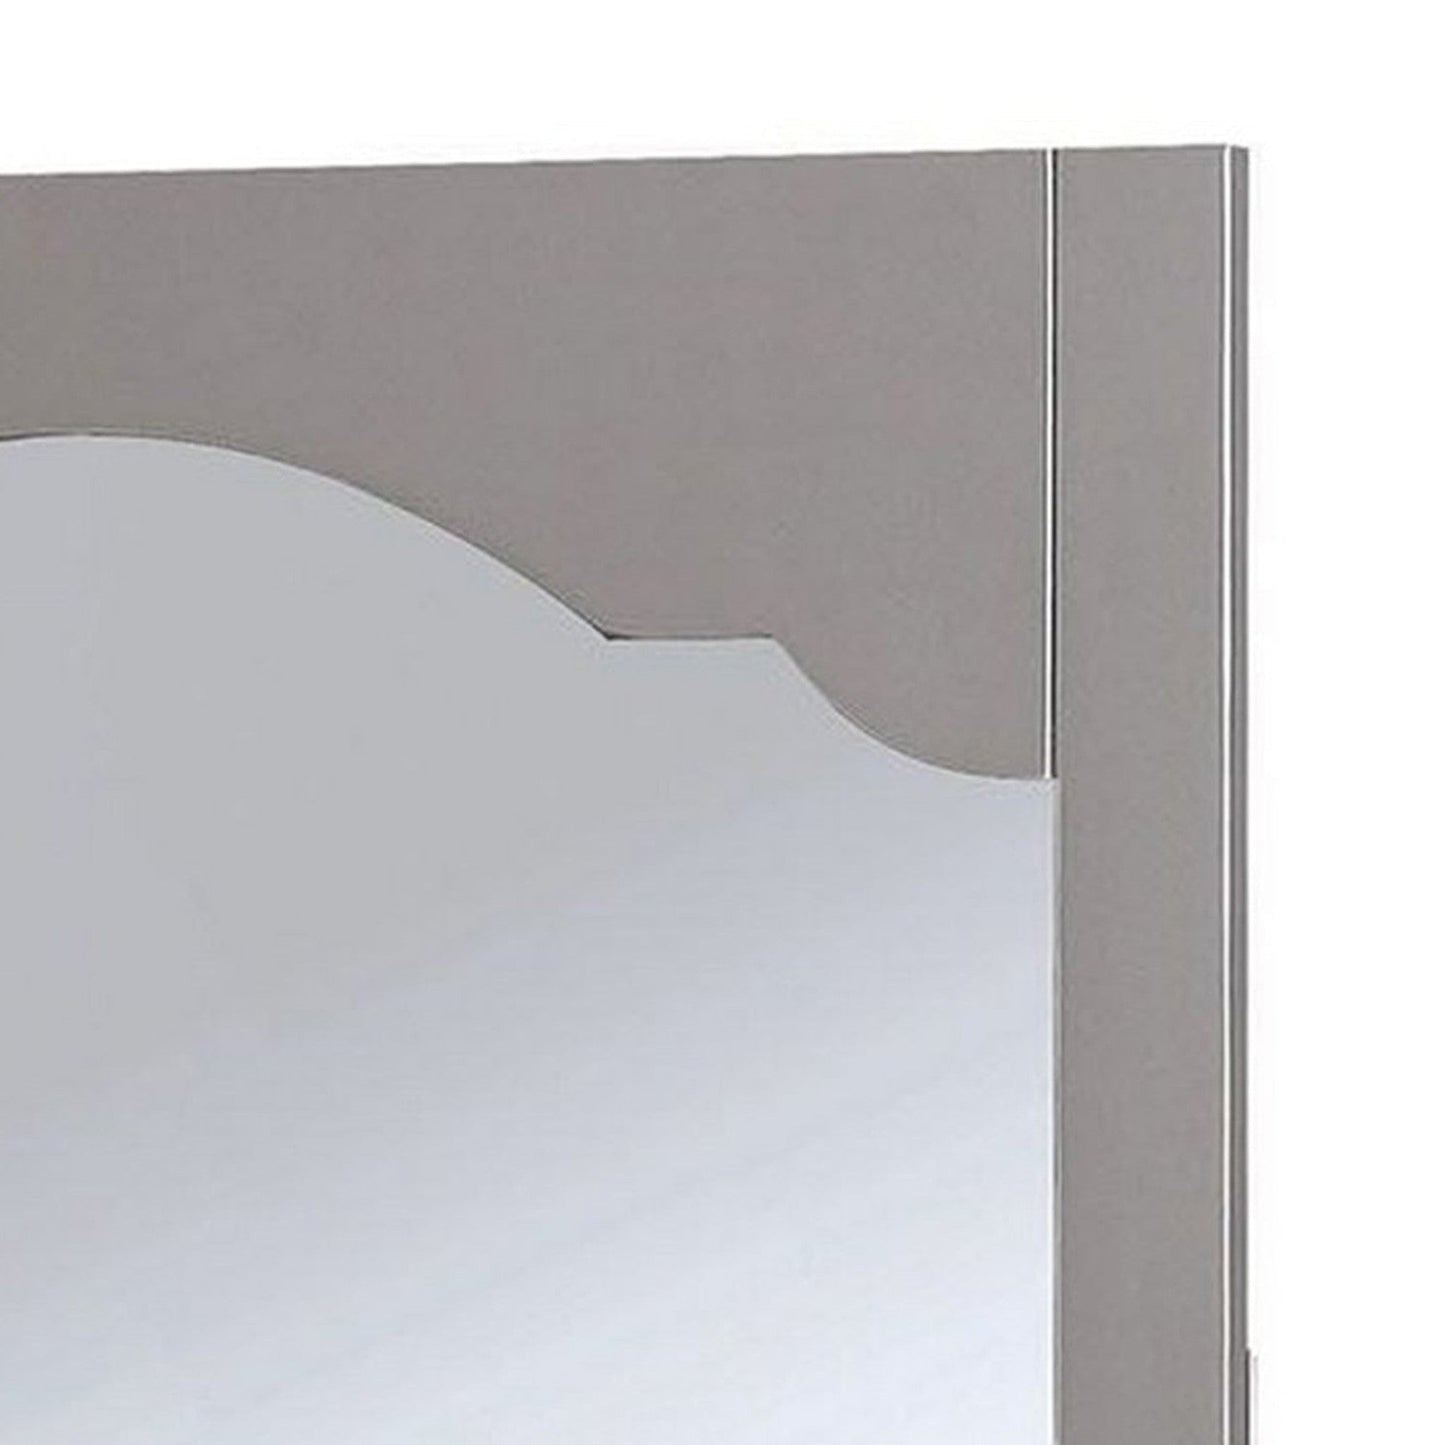 Benzara Gray Wooden Encasing Mirror With Arched Design Top